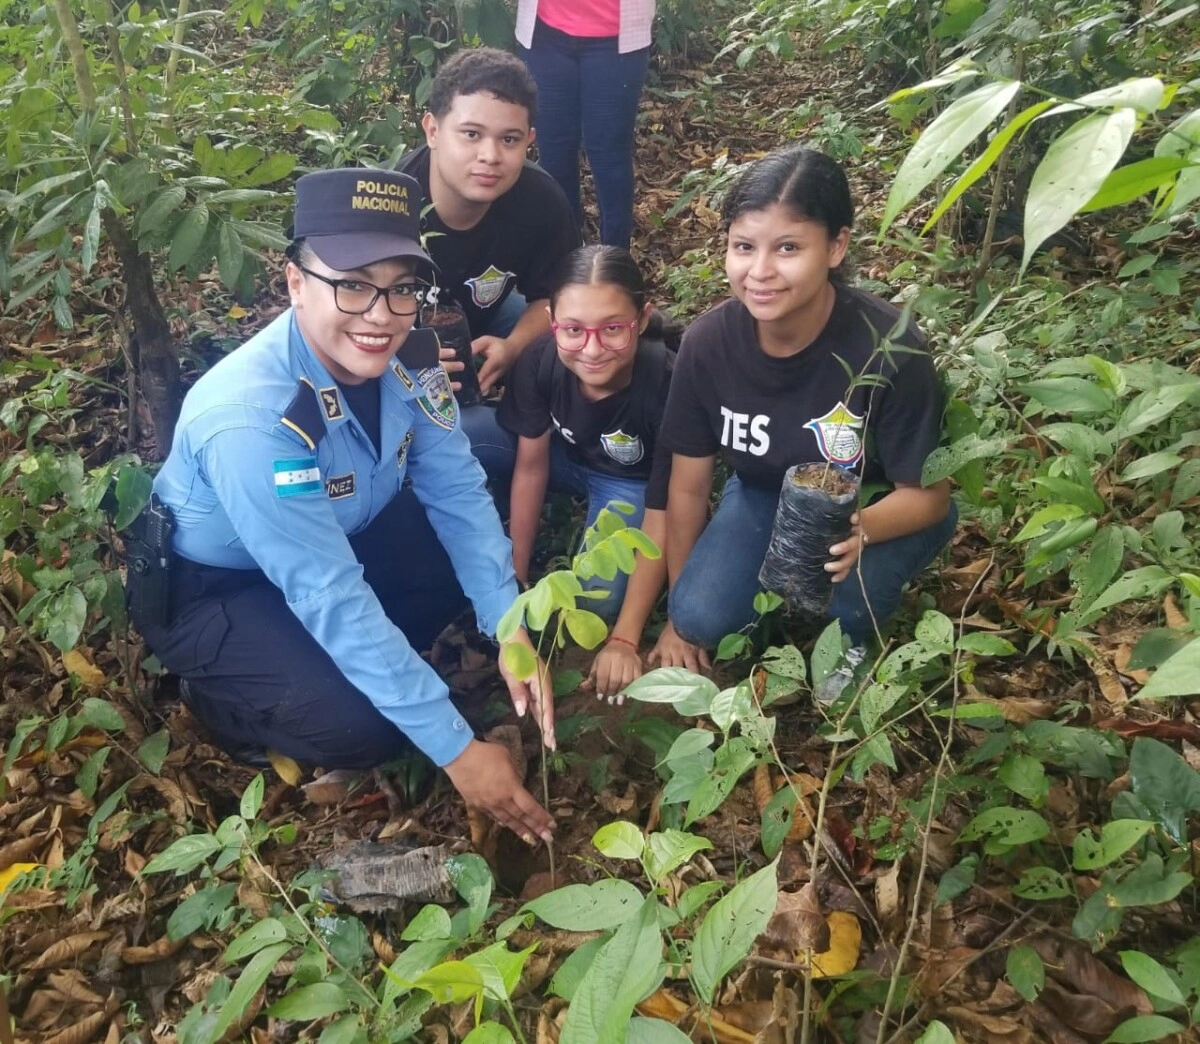 Policía Nacional de La Ceiba se une al mundo verde de sembrar árboles03
